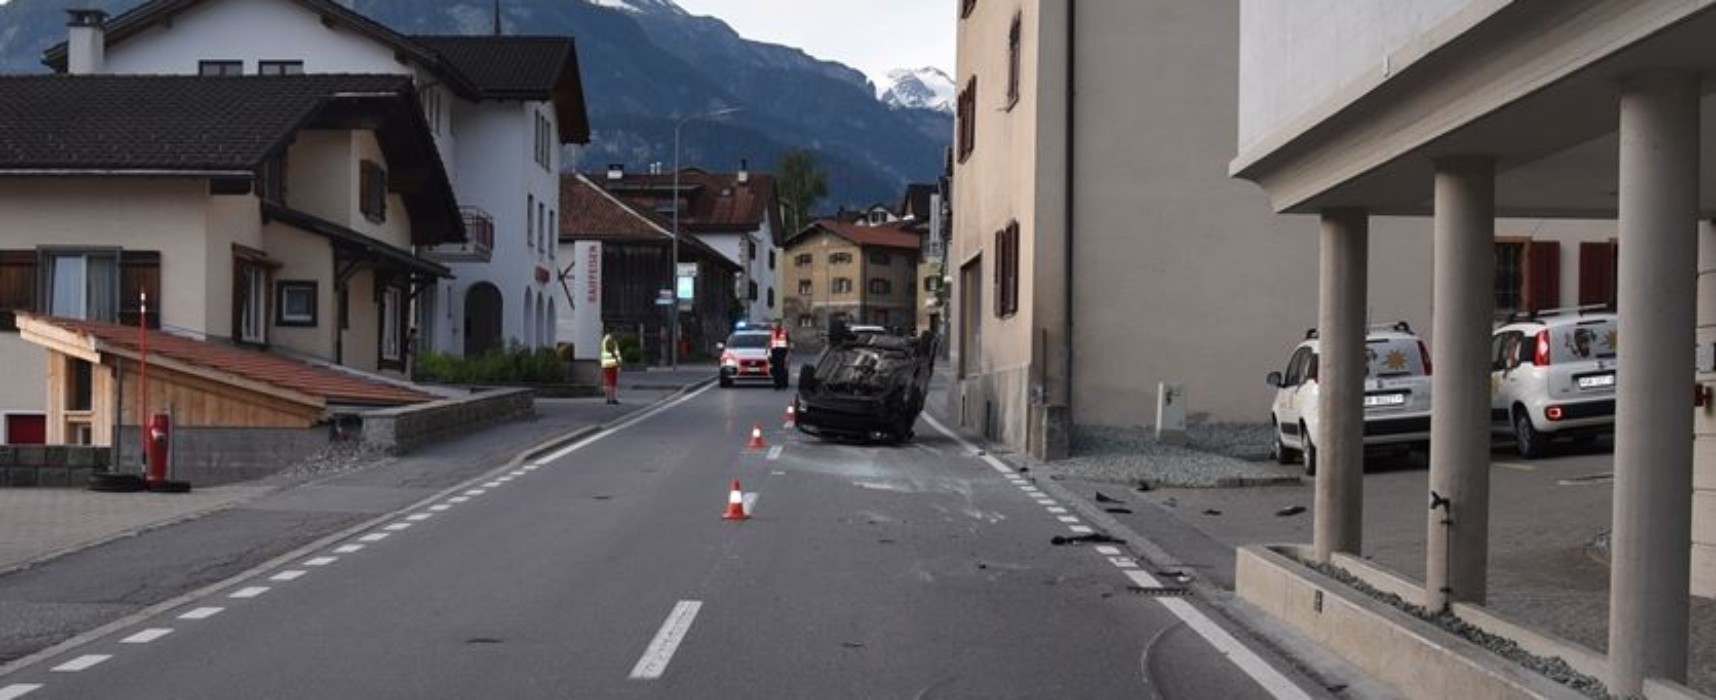 Unfall in Cazis zwischen Raiffeisenbank und Senteler Reinigungen